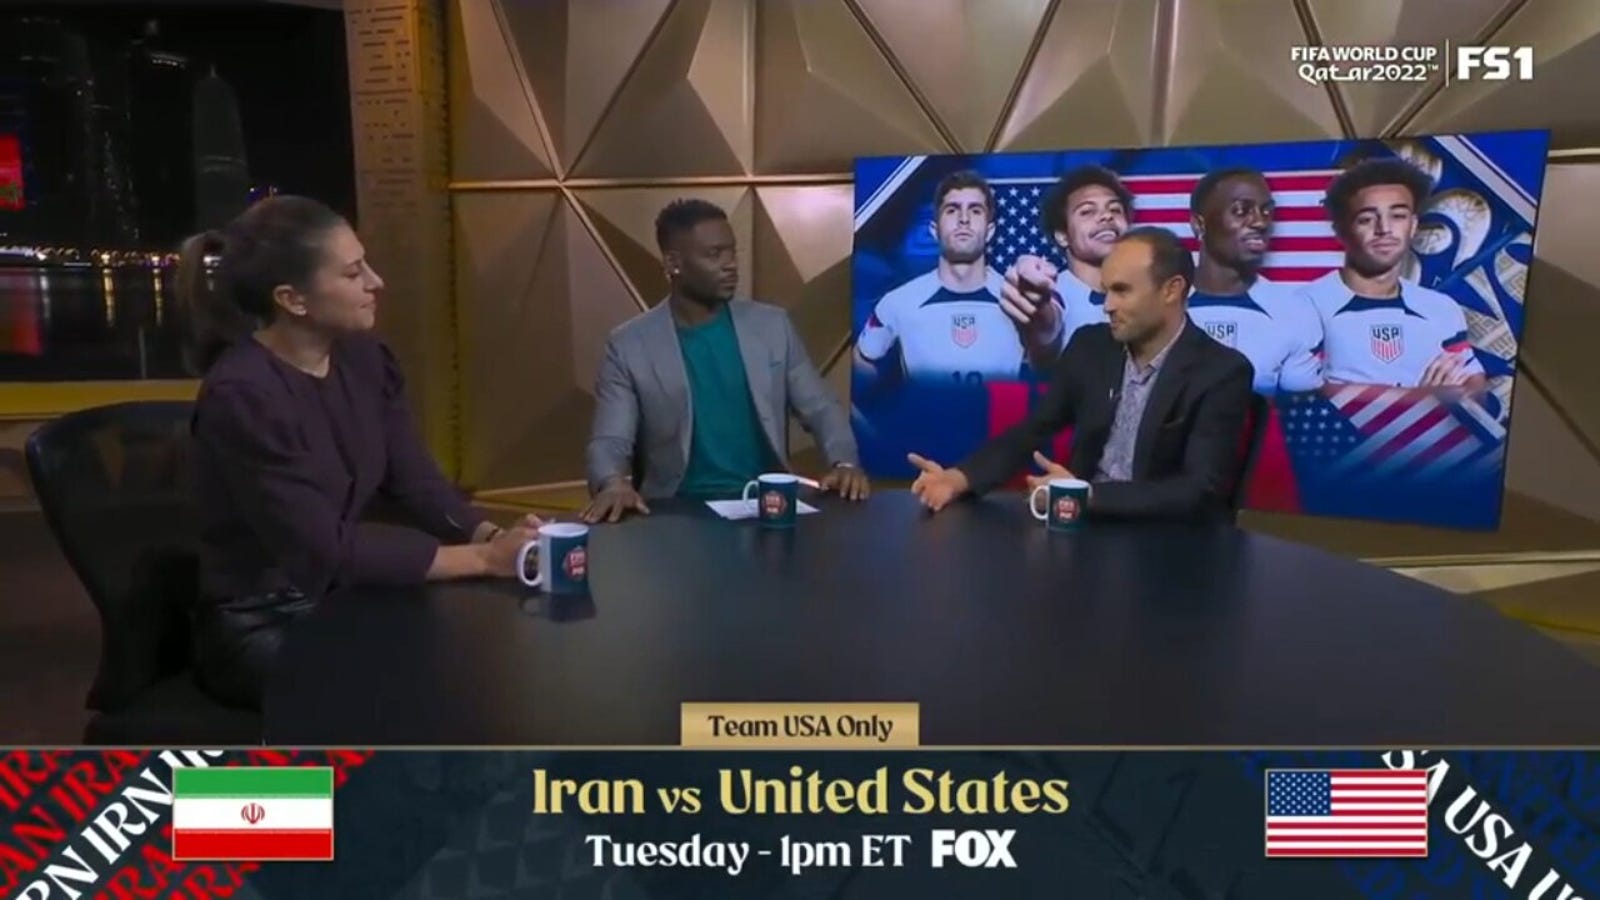 Irán vs. USA előzetes: Kiesik az USMNT a csoportkörben? 